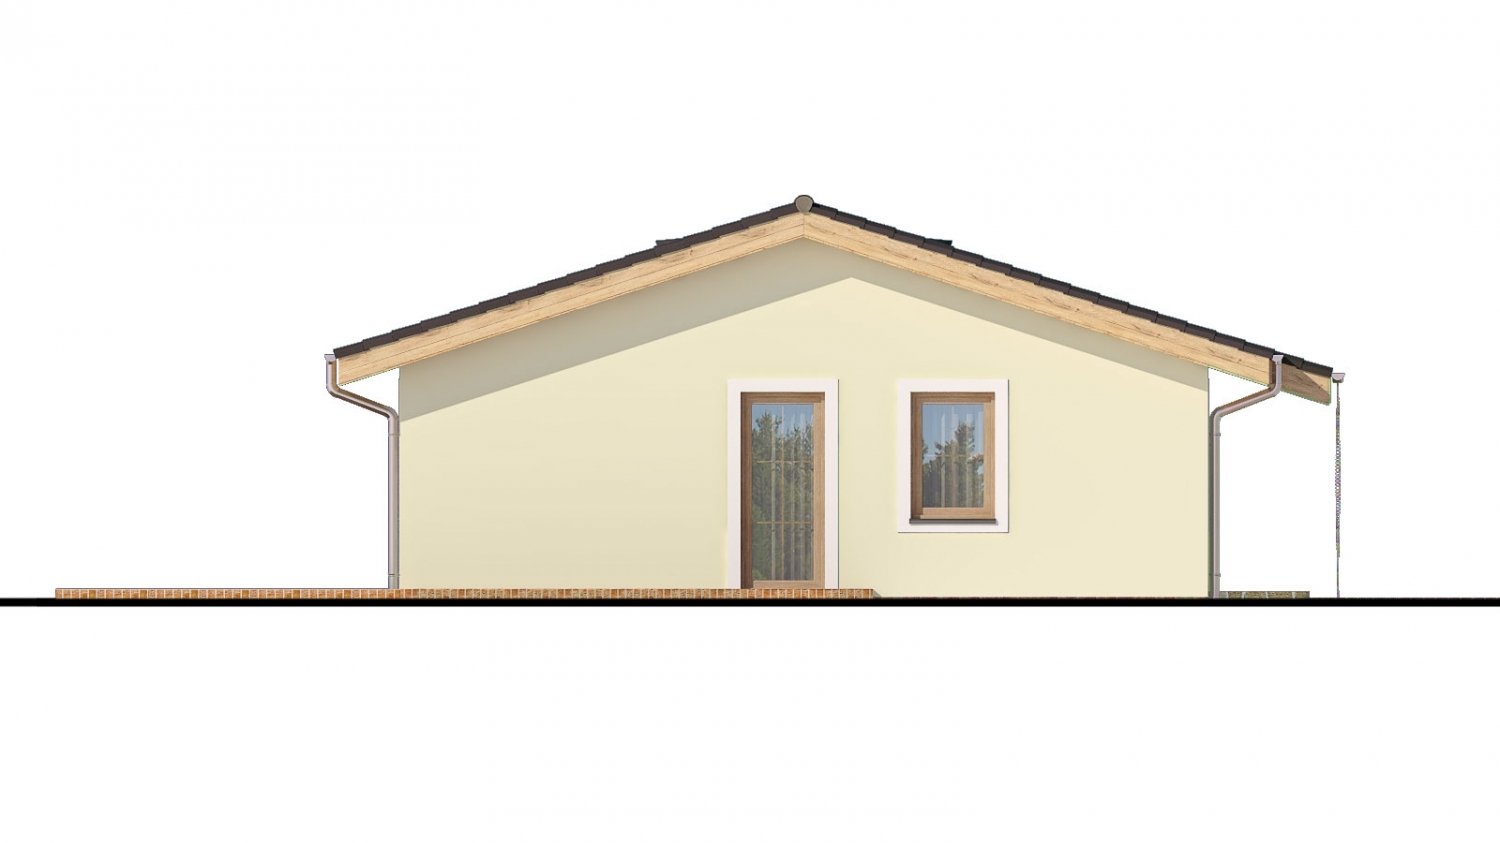 Pohľad 4. - Zděný projekt rodinného domu na úzký pozemek se sedlovou střechou. Zpracovaný v 3d realitě s umístěním na pozemek.